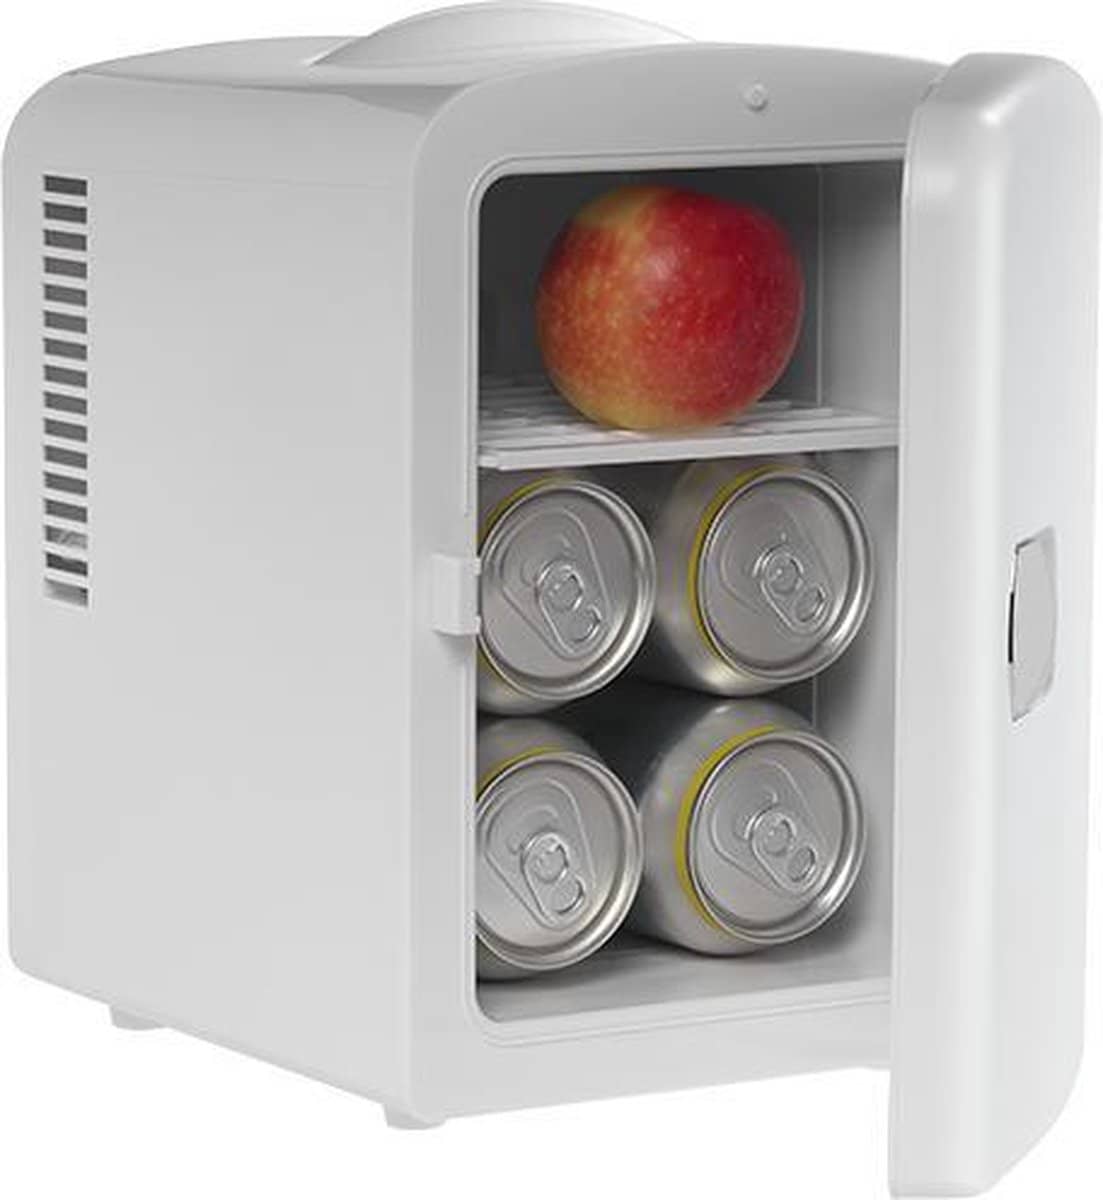 Denver Mini koelkast – Skincare Fridge. Zeer compacte koelkast